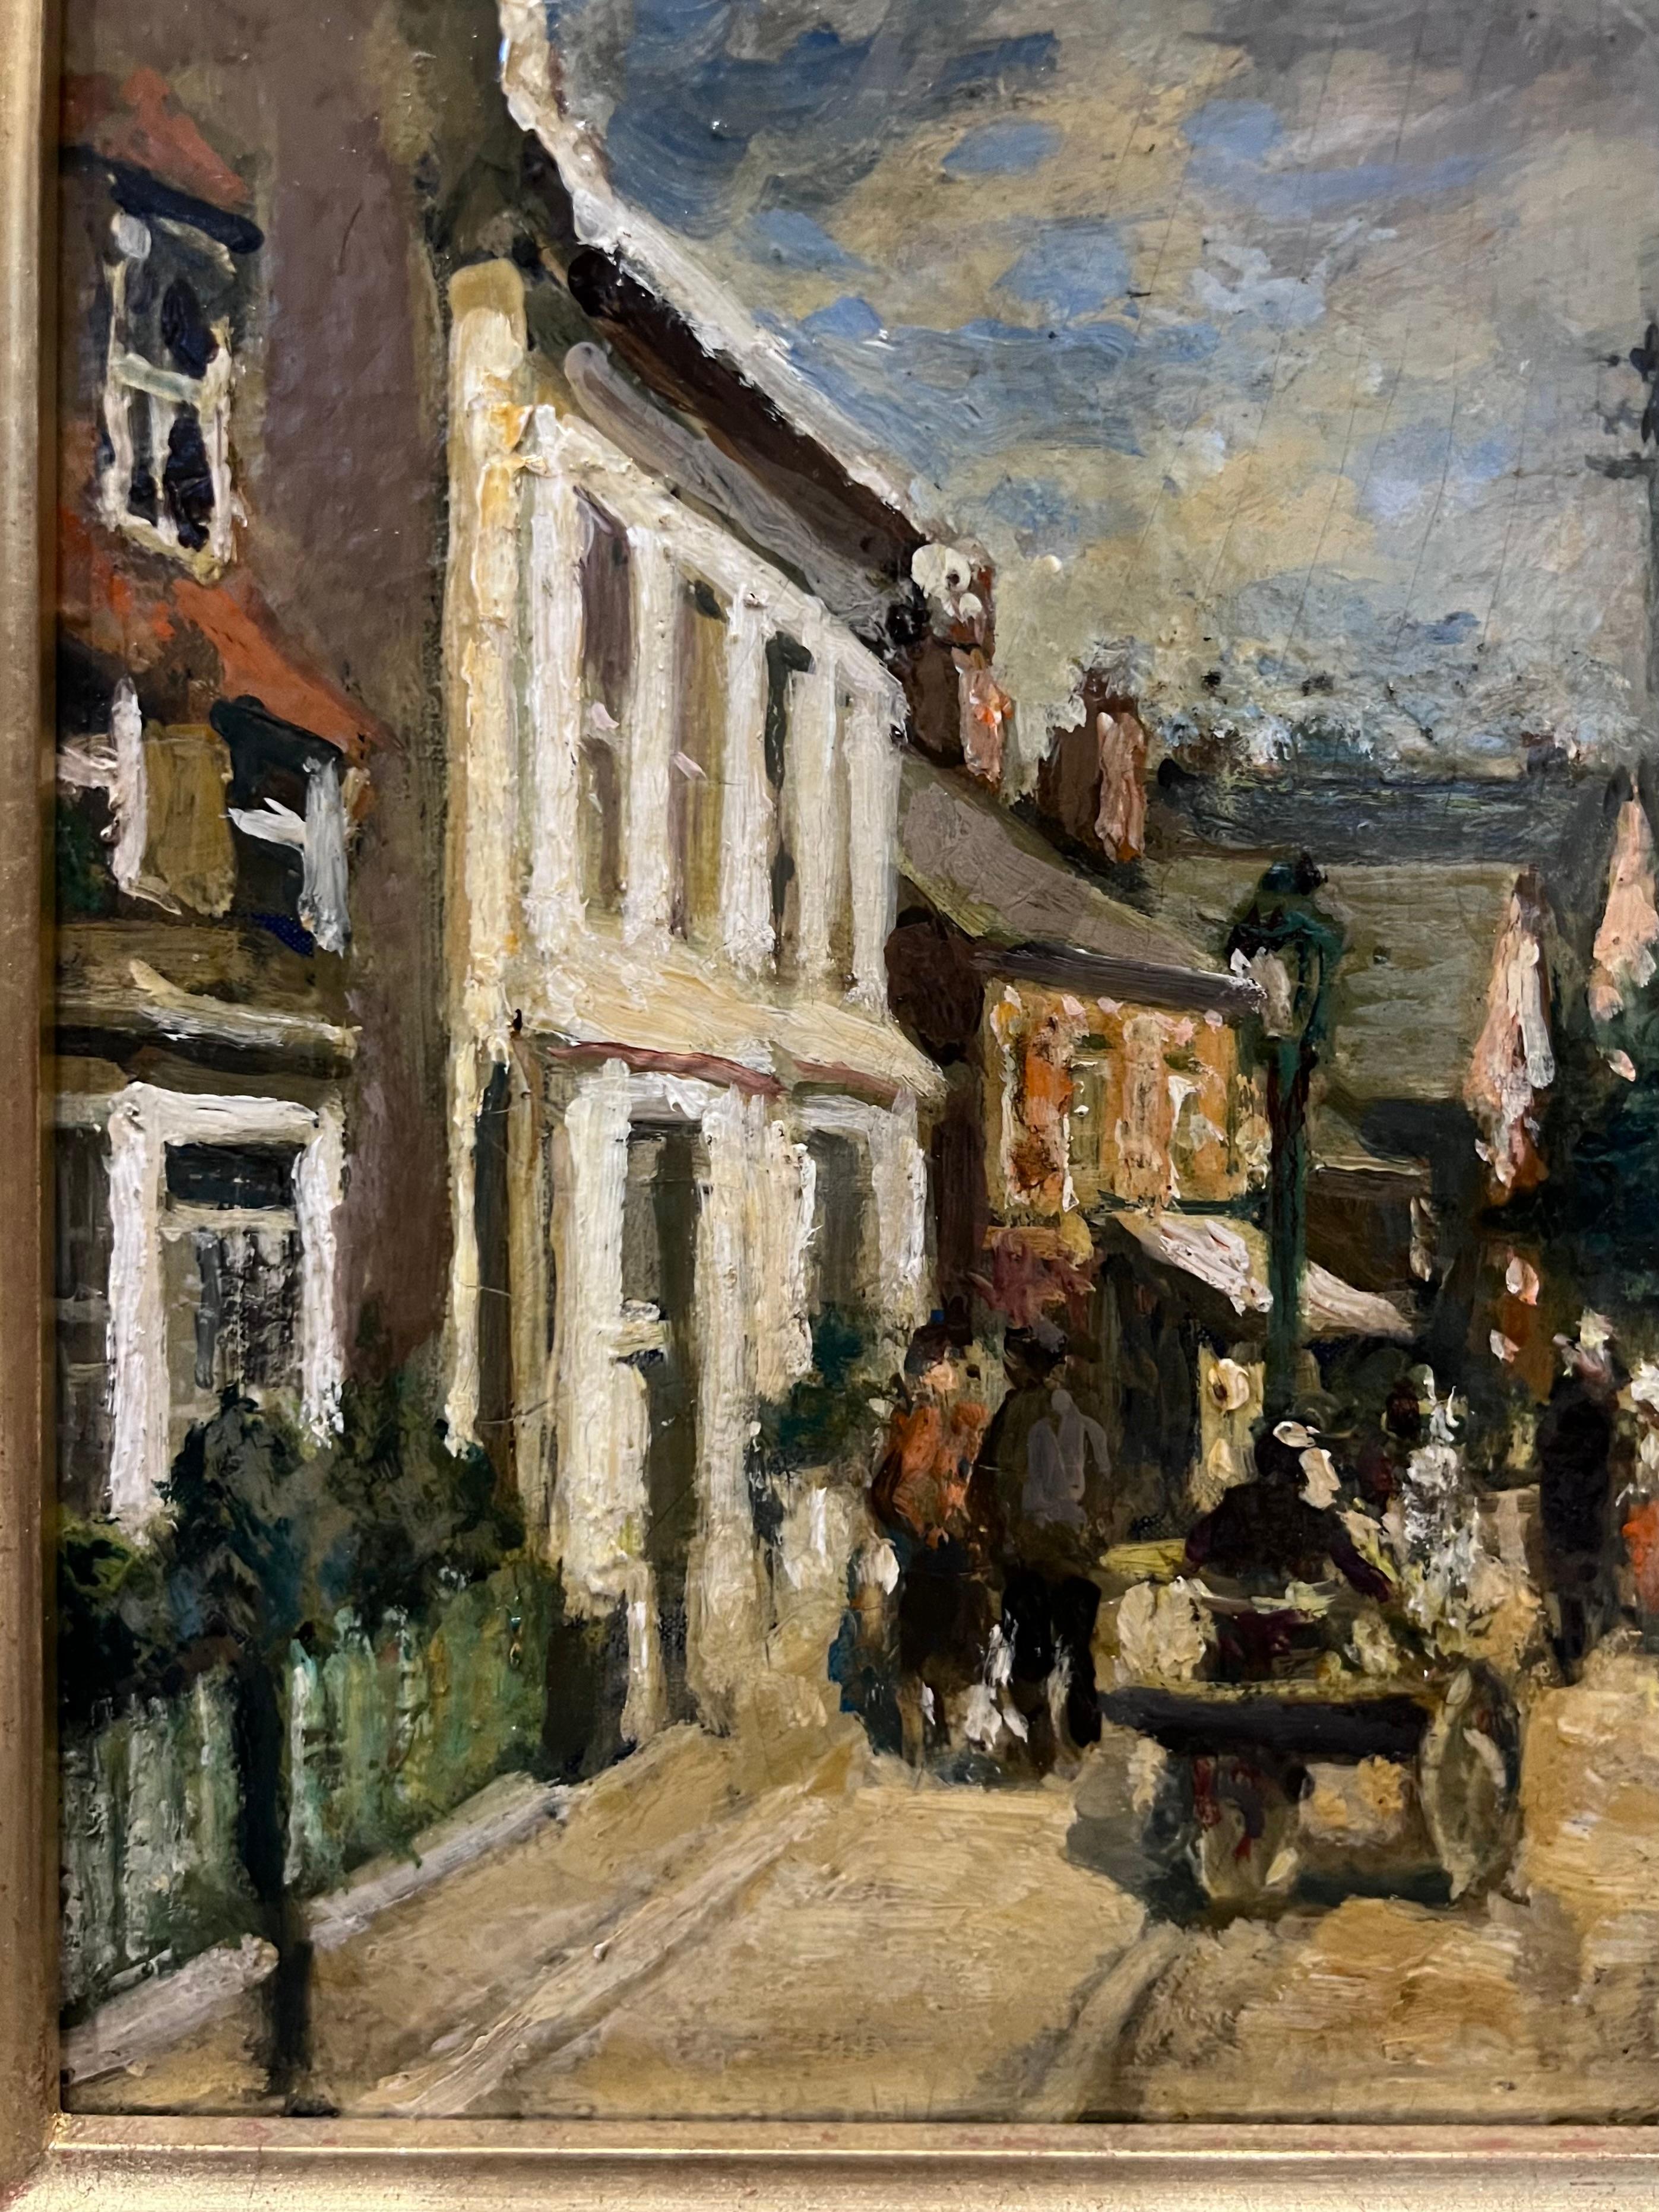 Rue de village en Angleterre - École de Barbizon Painting par Jacques Emile Blanche